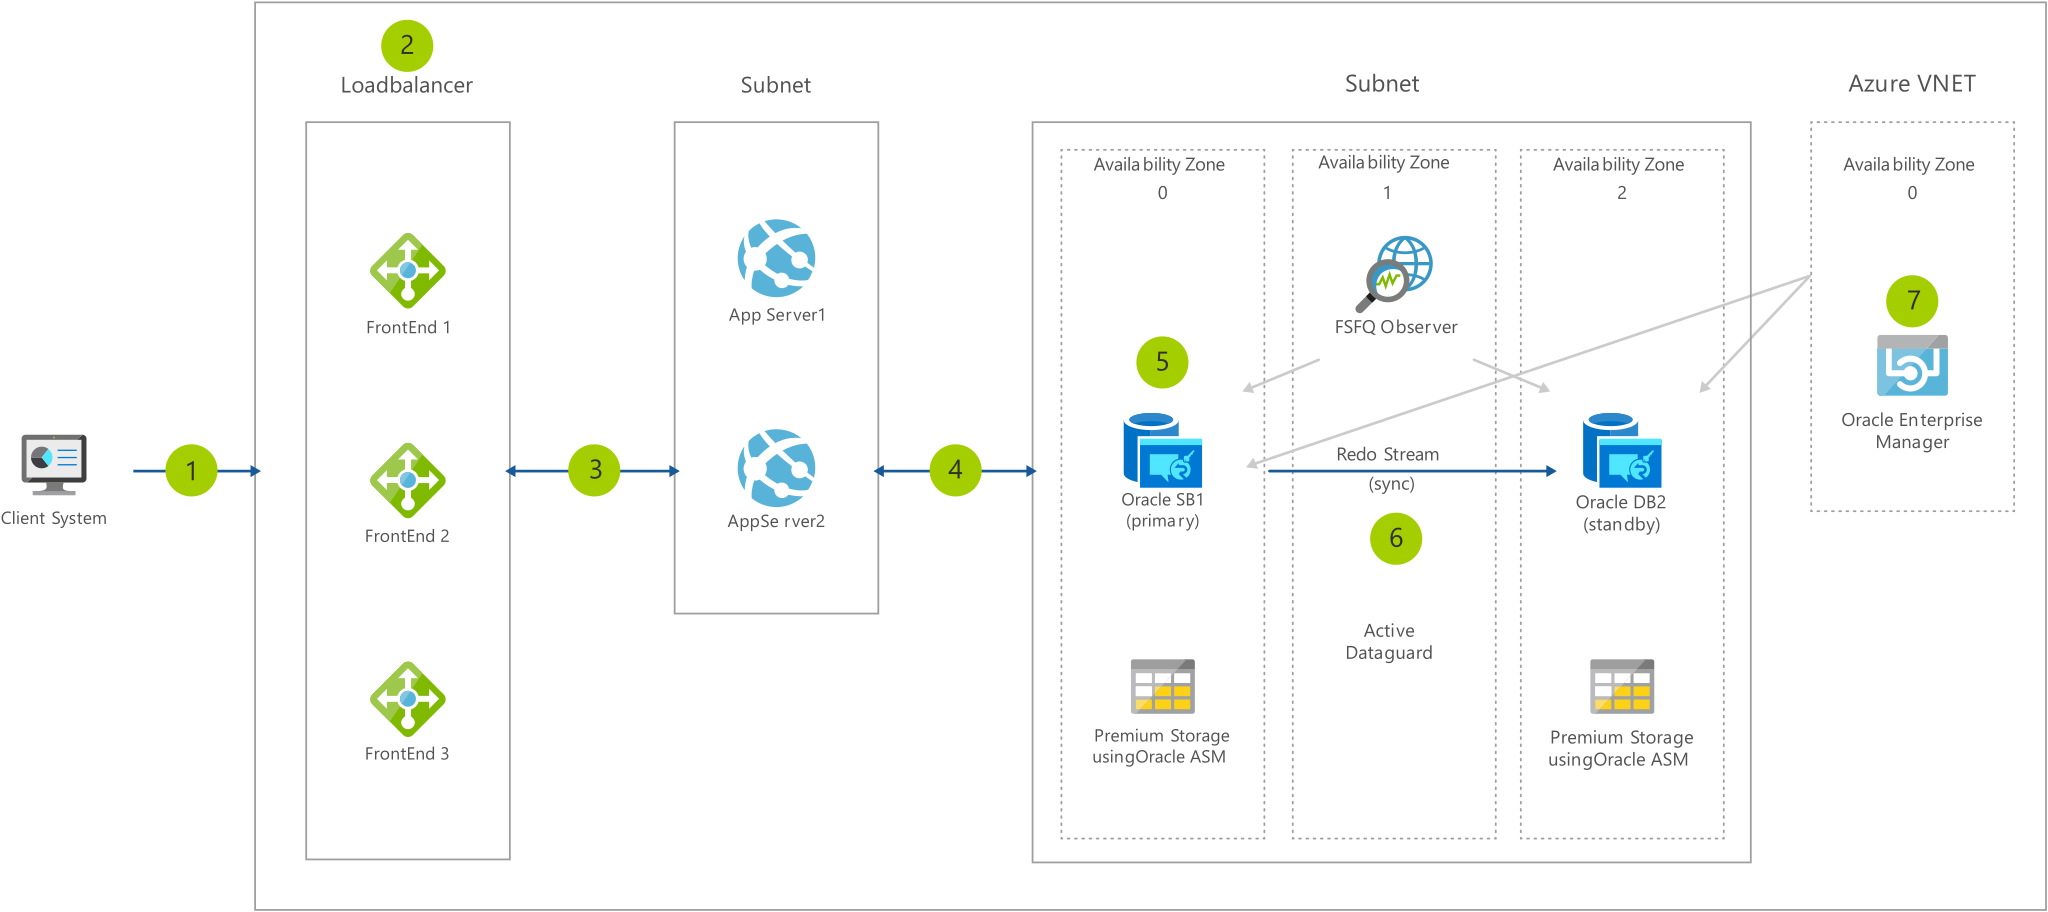 Le diagramme d’architecture montre que le client passe par un équilibreur de charge et des sous-réseaux pour arriver au réseau virtuel Azure.